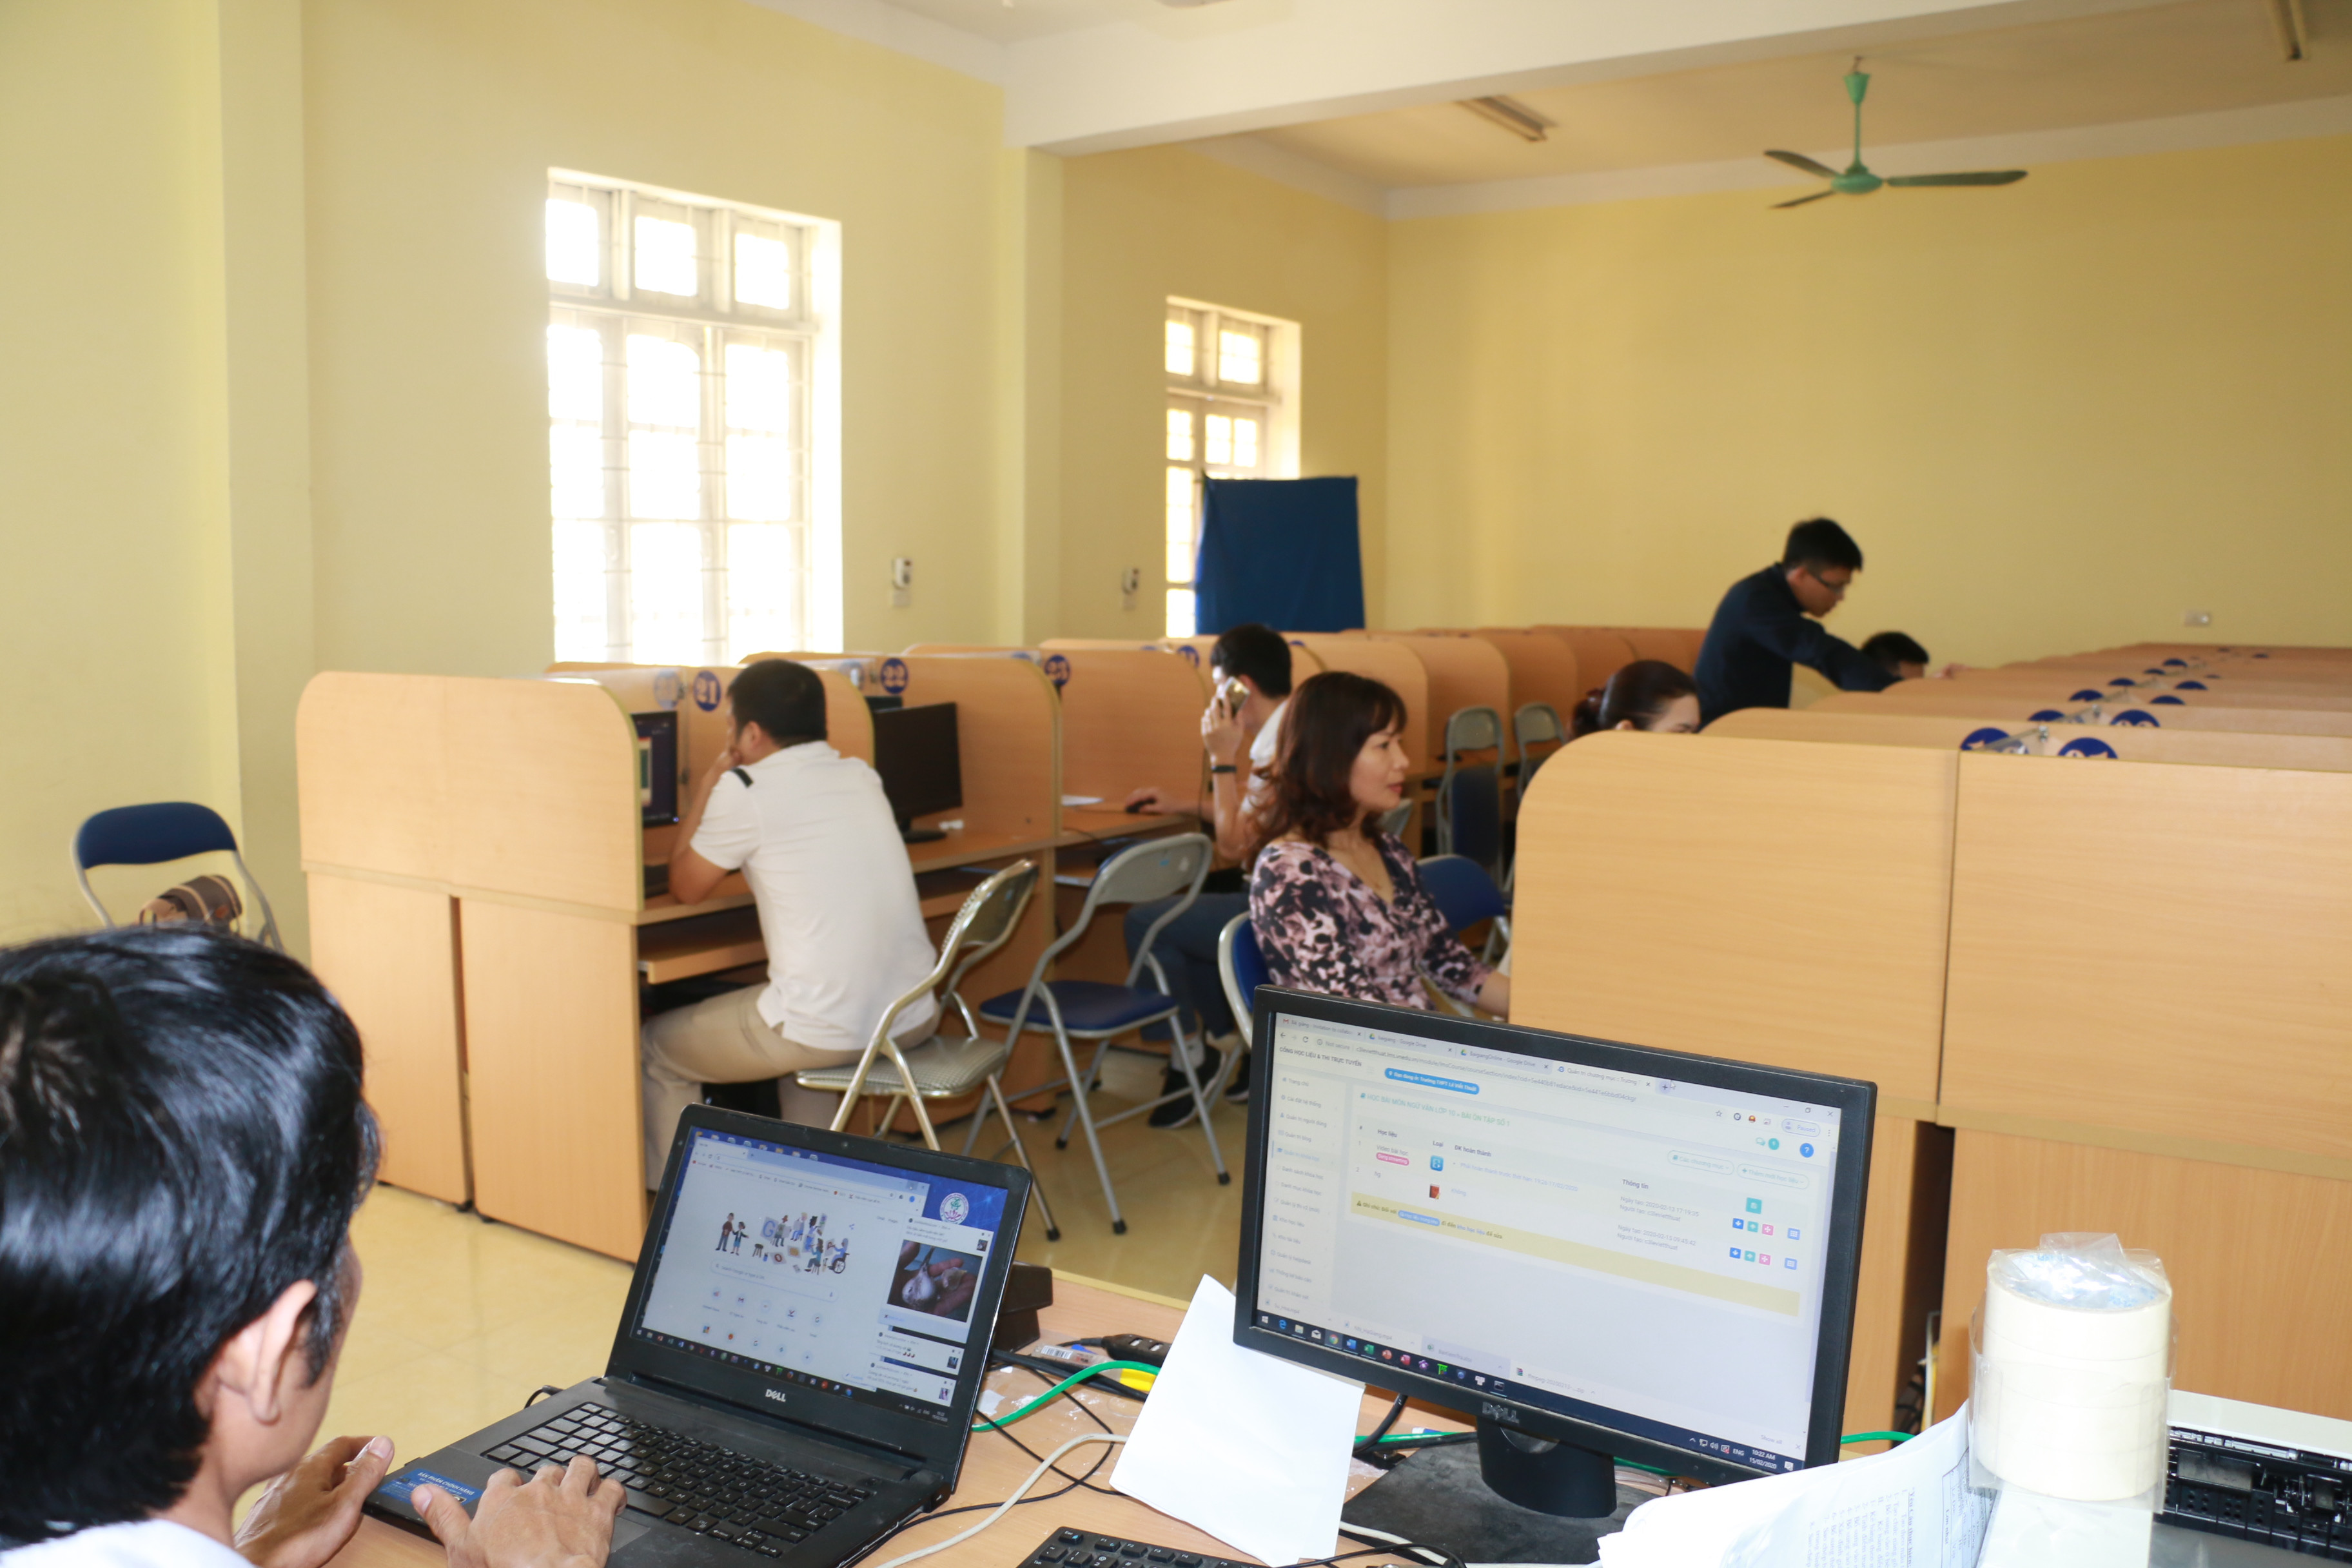 Giáo viên Trường THPT Lê Viết Thuật đang tiến hành cập nhật các bài giảng trực tuyến lên hệ thống cho học sinh. Ảnh: MH.